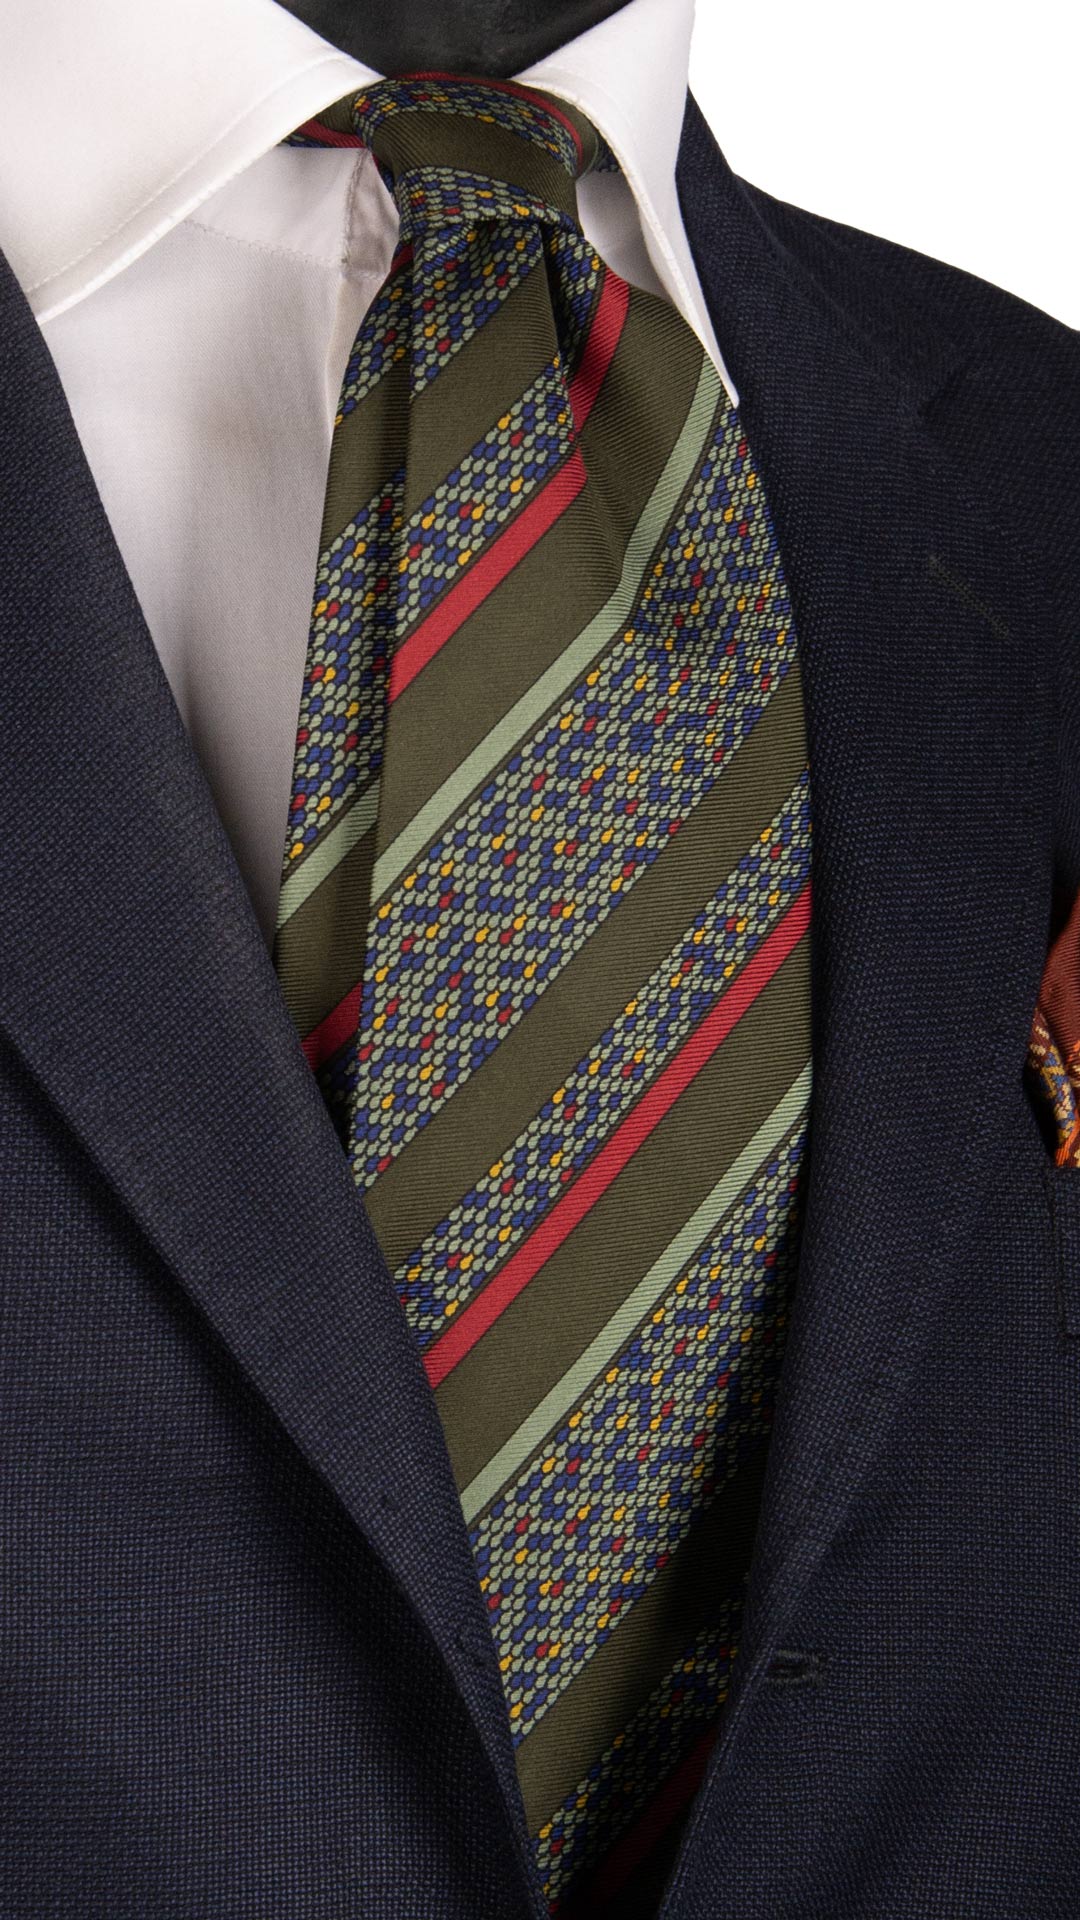 Cravatta Vintage Regimental in Twill di Seta Verde A Righe Multicolor CV794 Made in Italy Graffeo Cravatte